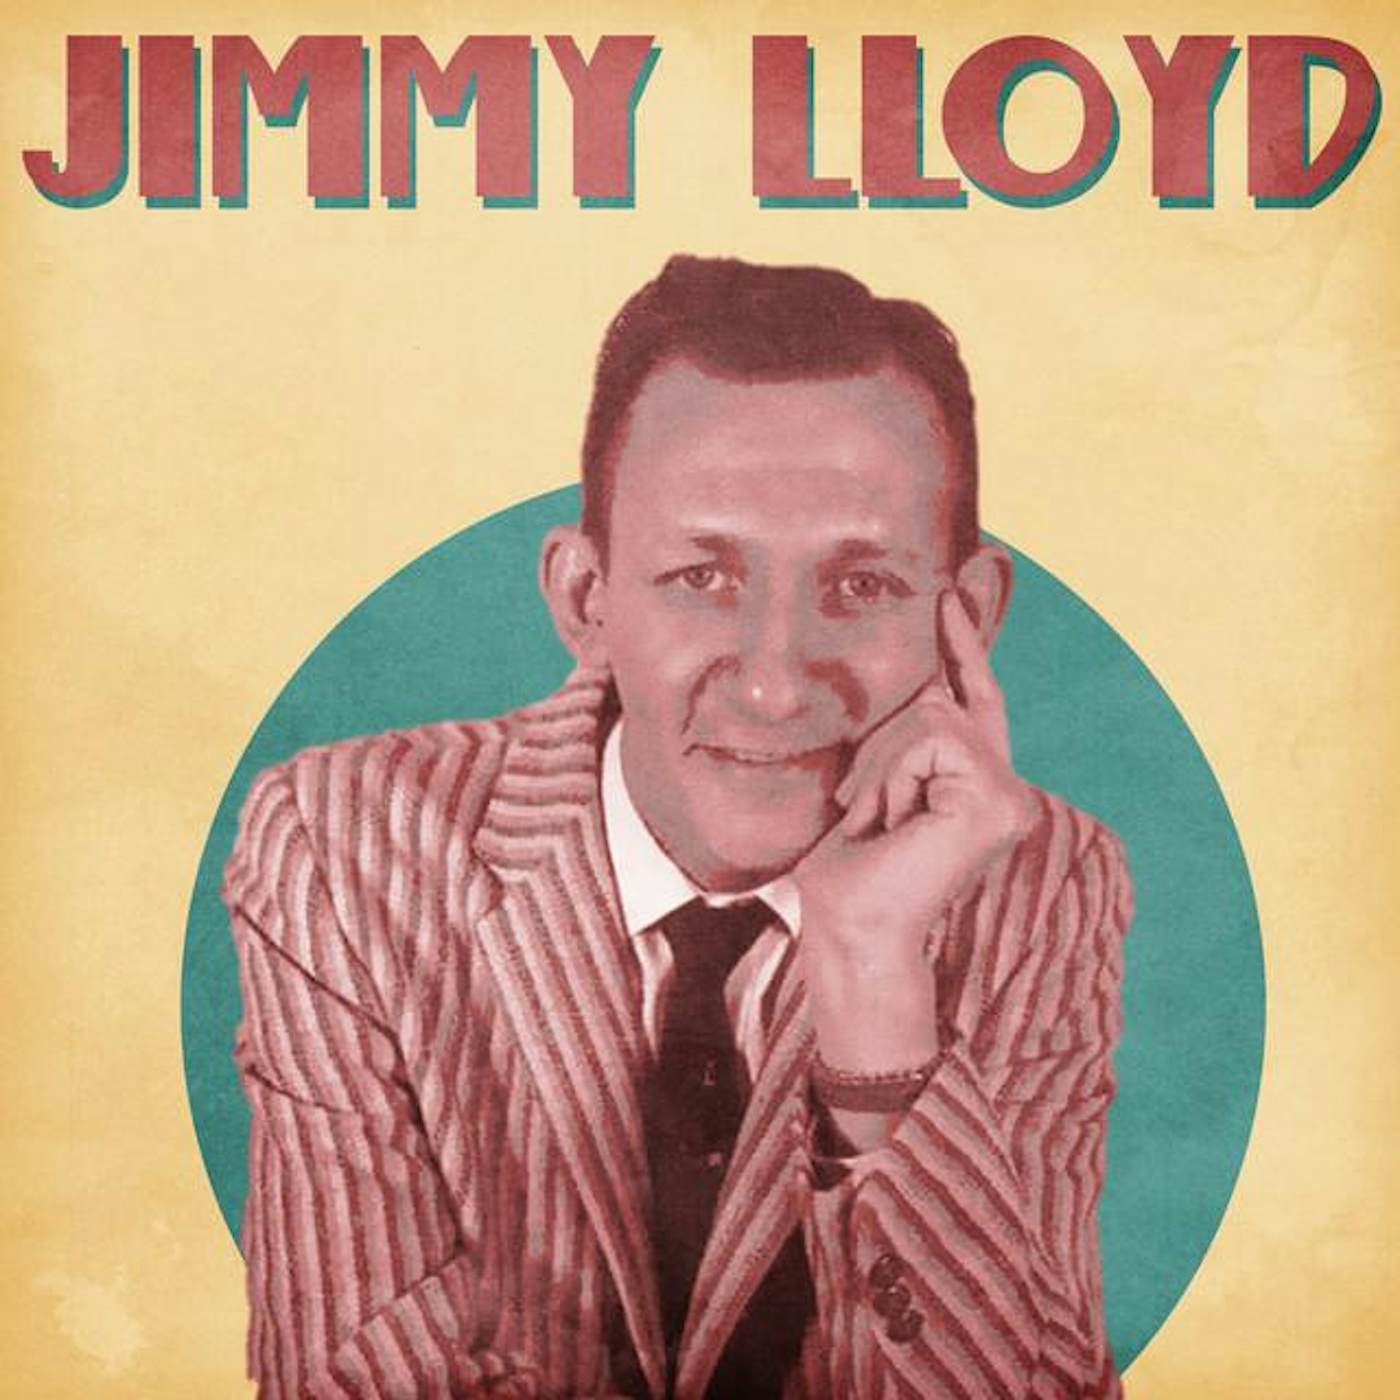 Jimmy Lloyd